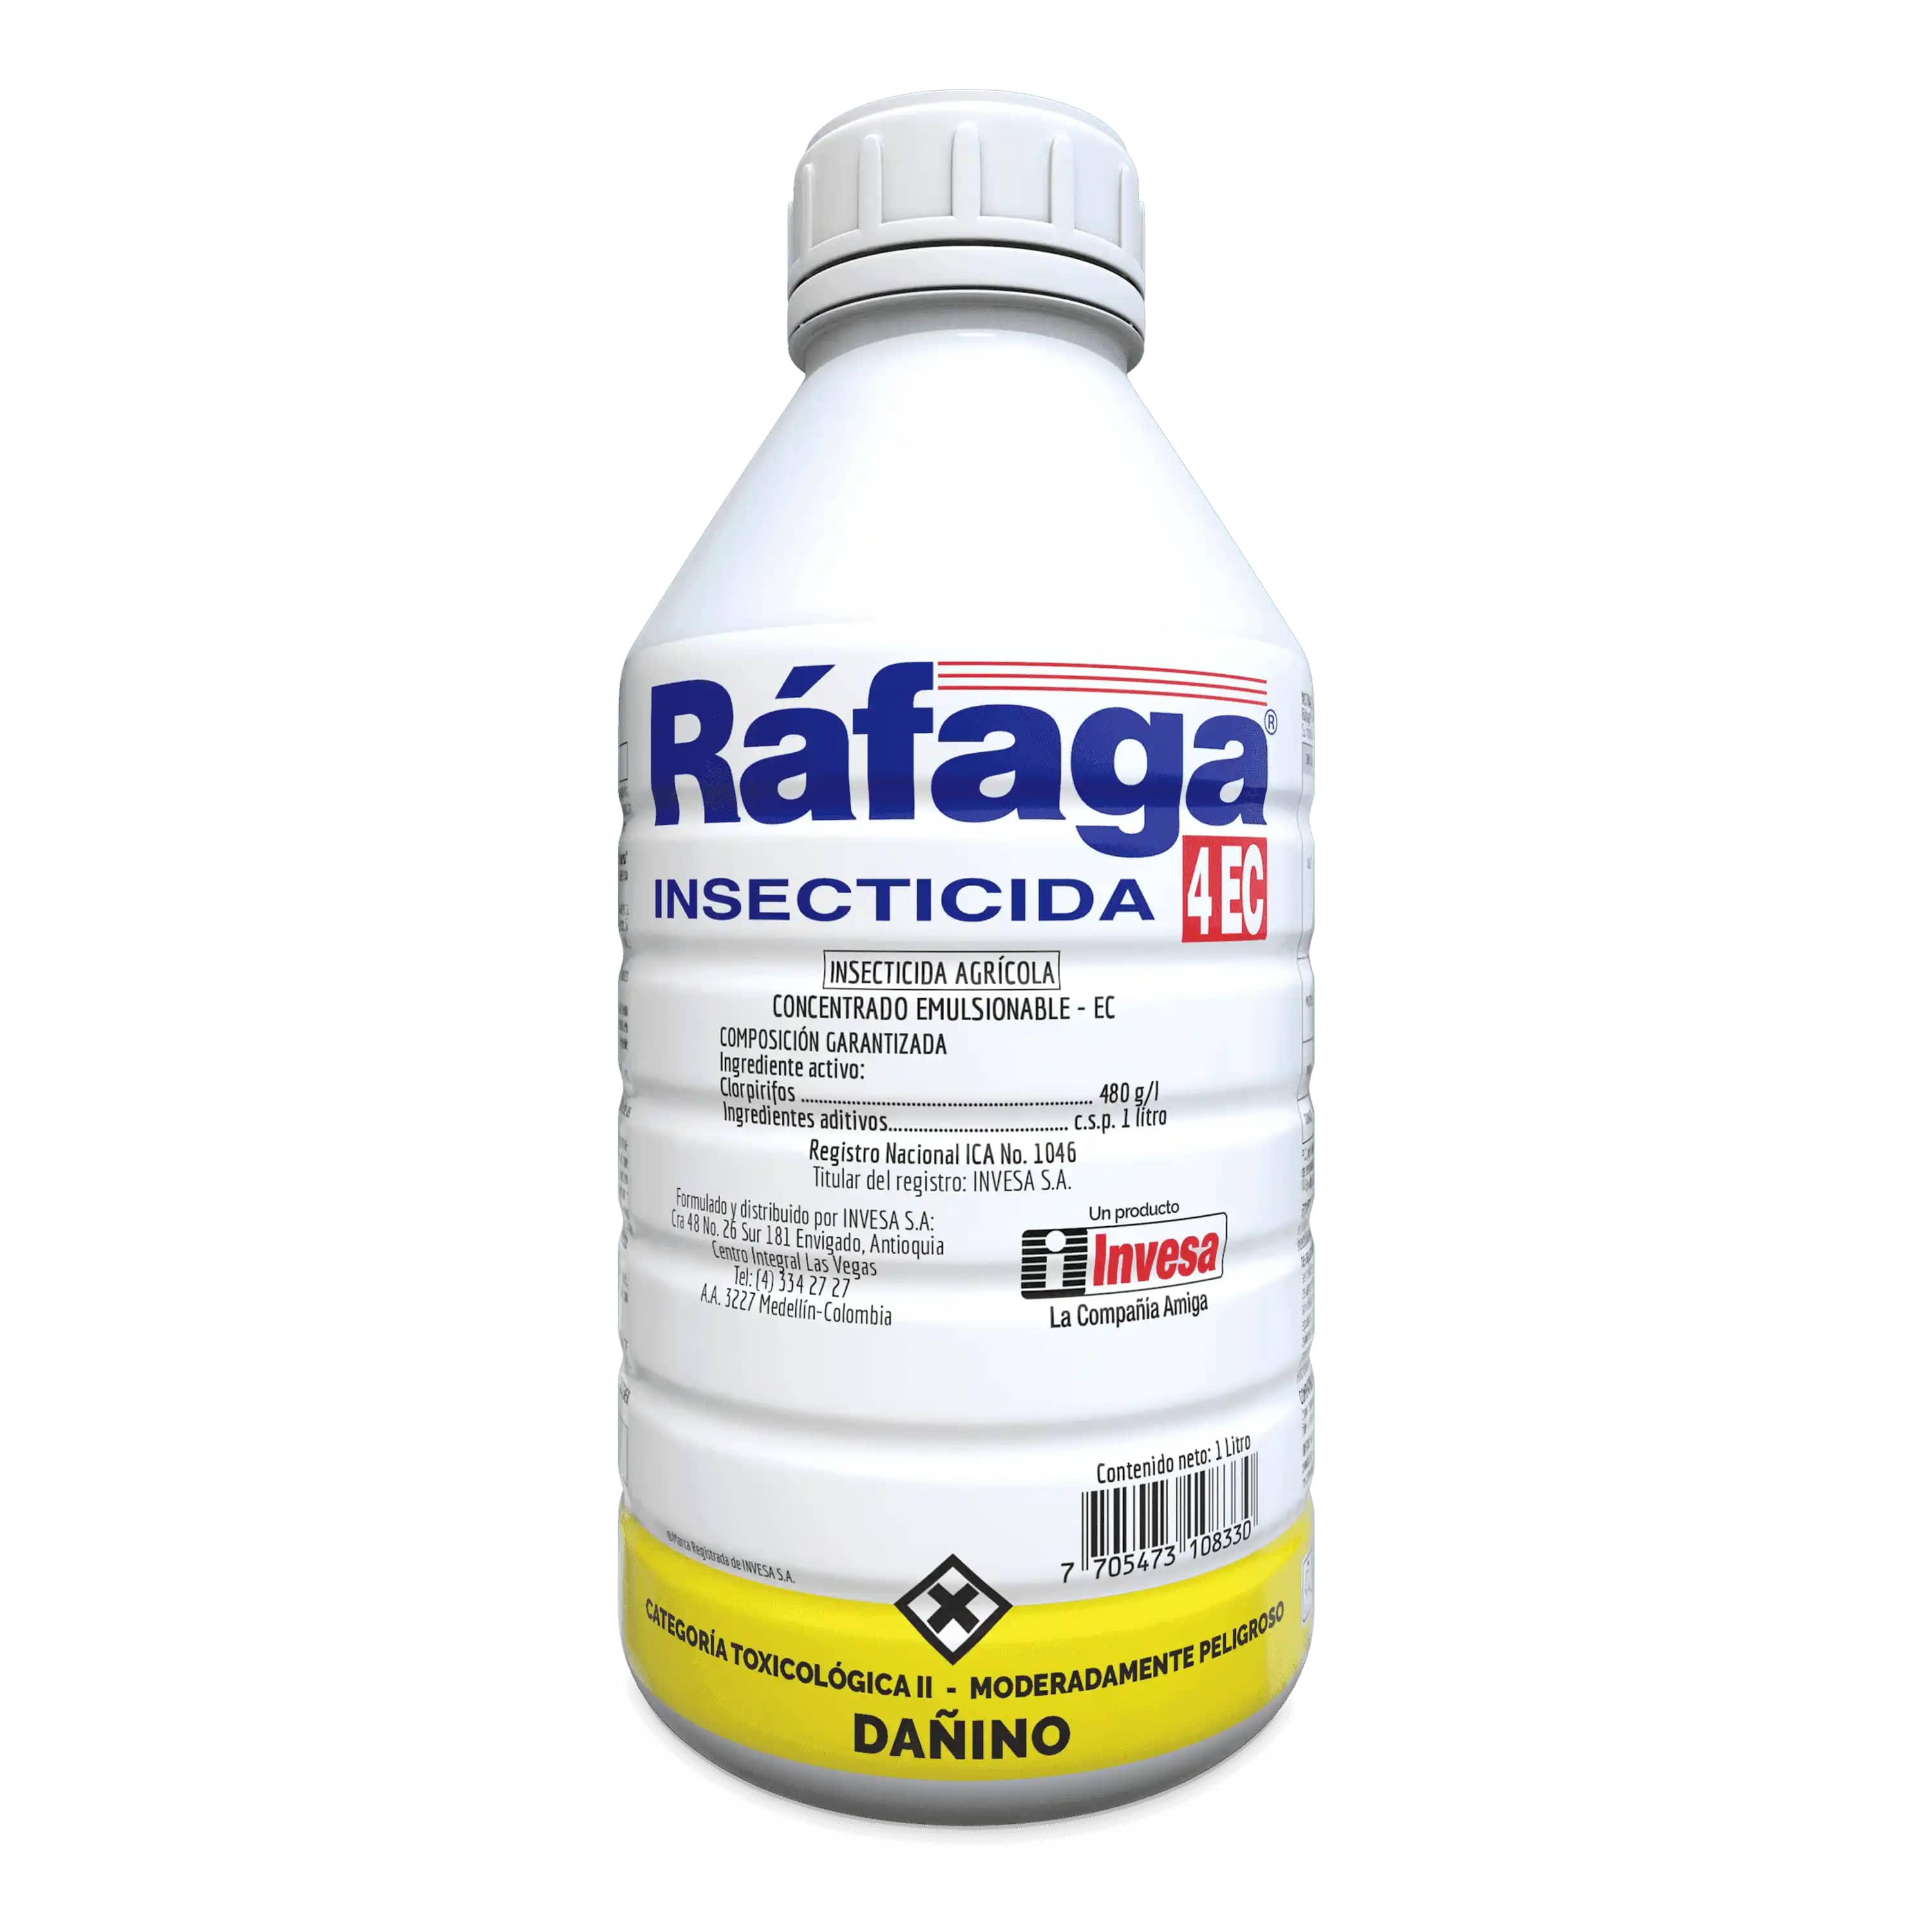 Rafaga 4EC Insecticida organofosforado, control de insectos